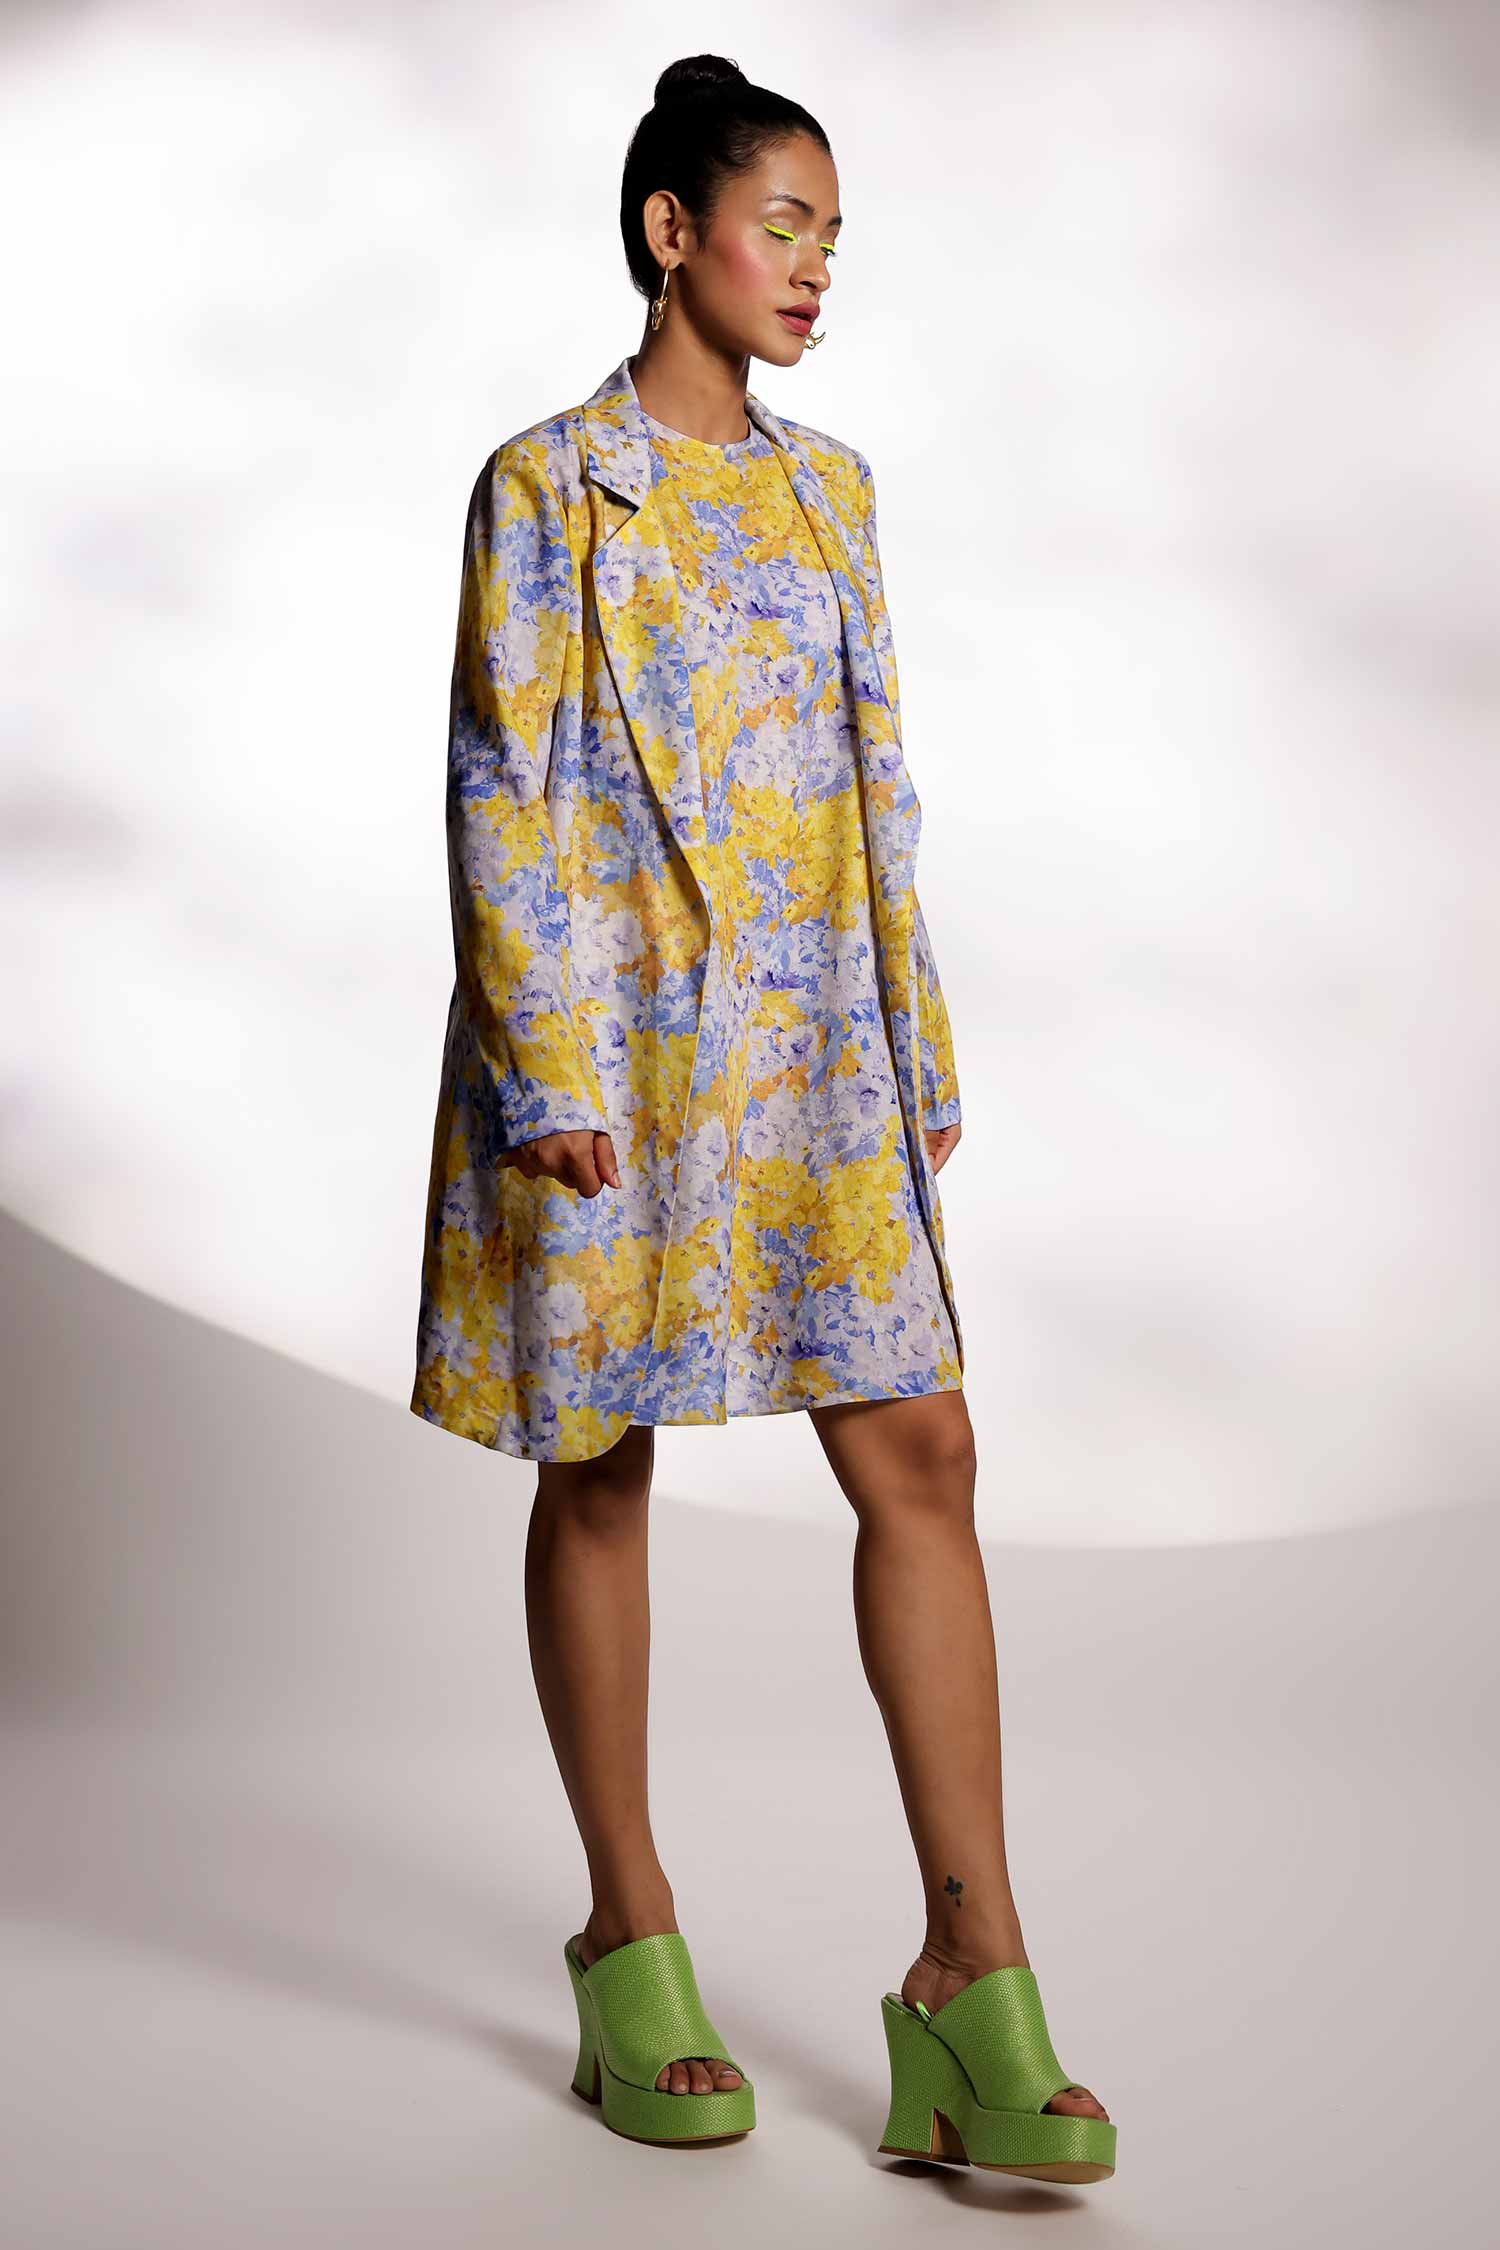 Yellow & Blue Print Blazer with dress